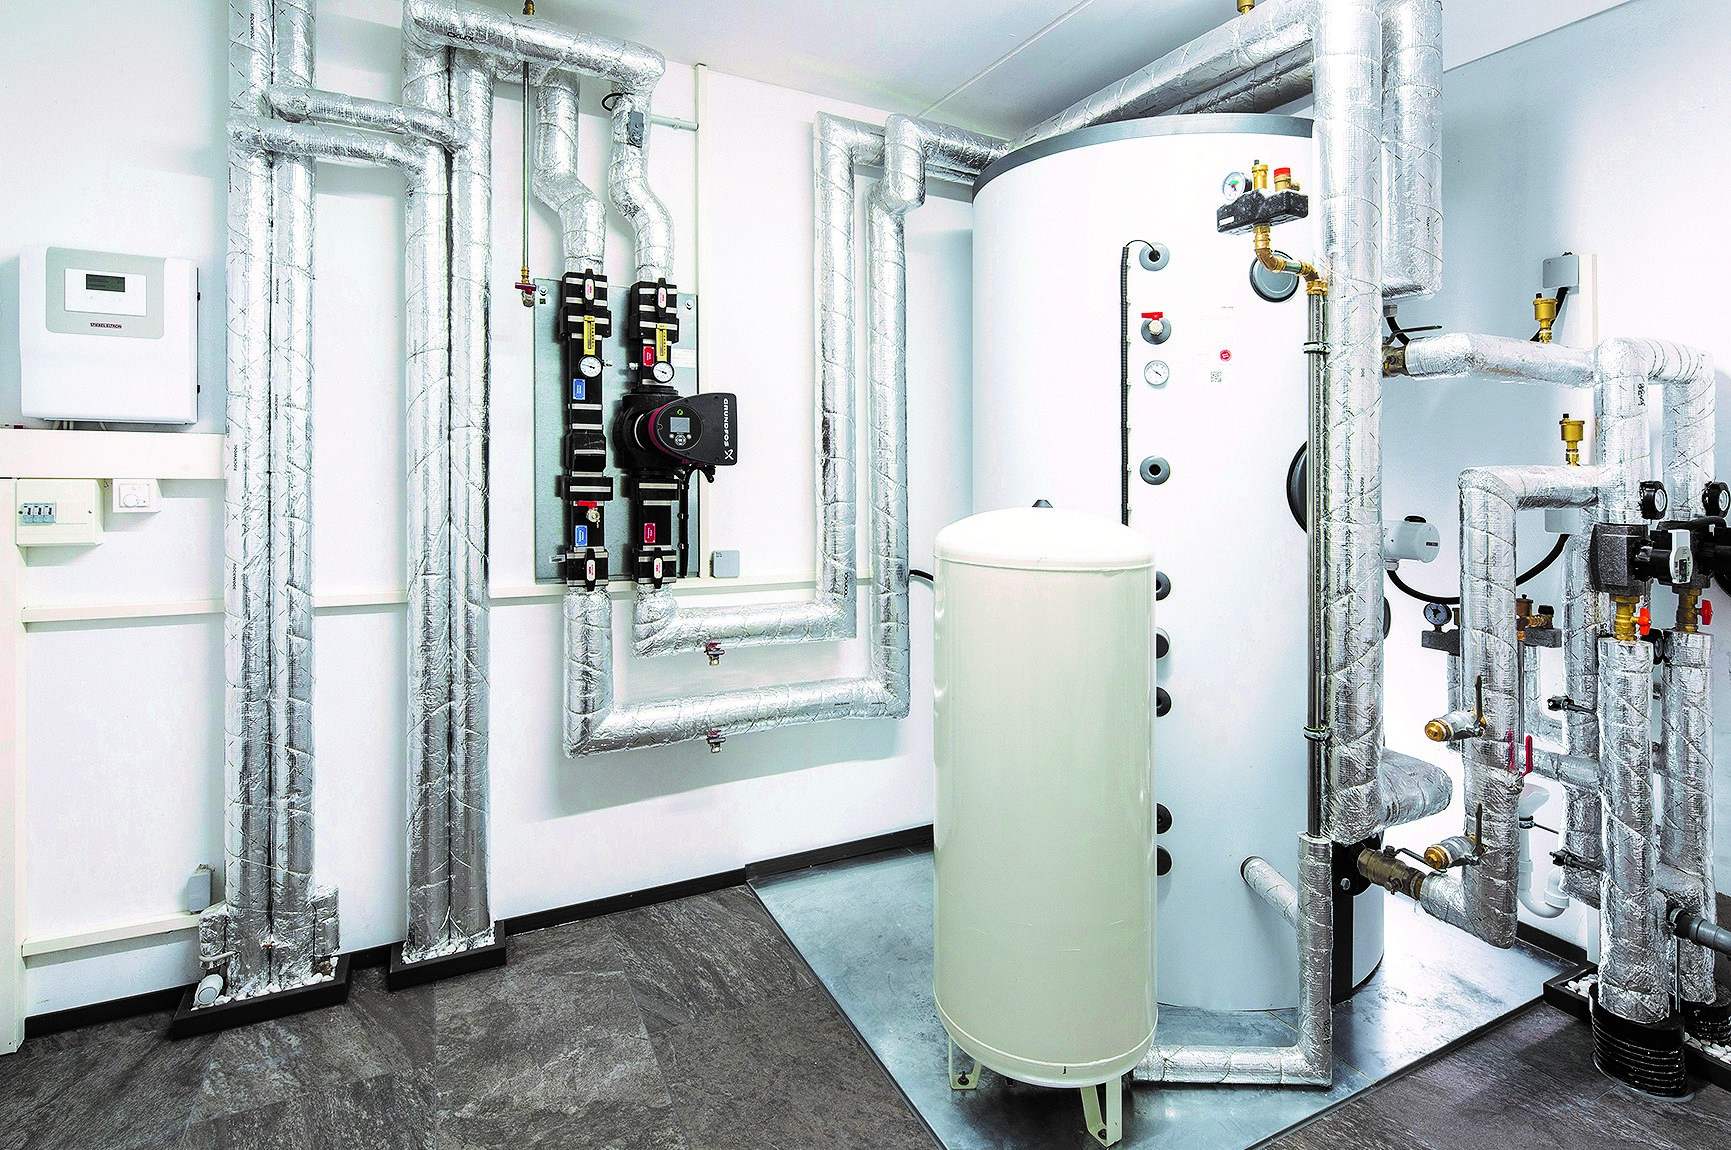 Tepelné čerpadlá vzduch-voda sú umiestnené v exteriéri v blízkosti technickej miestnosti situovanej na prízemí, kde sa nachádza regulácia tepelných čerpadiel a stacionárny 1 500 litrový akumulačný zásobník.